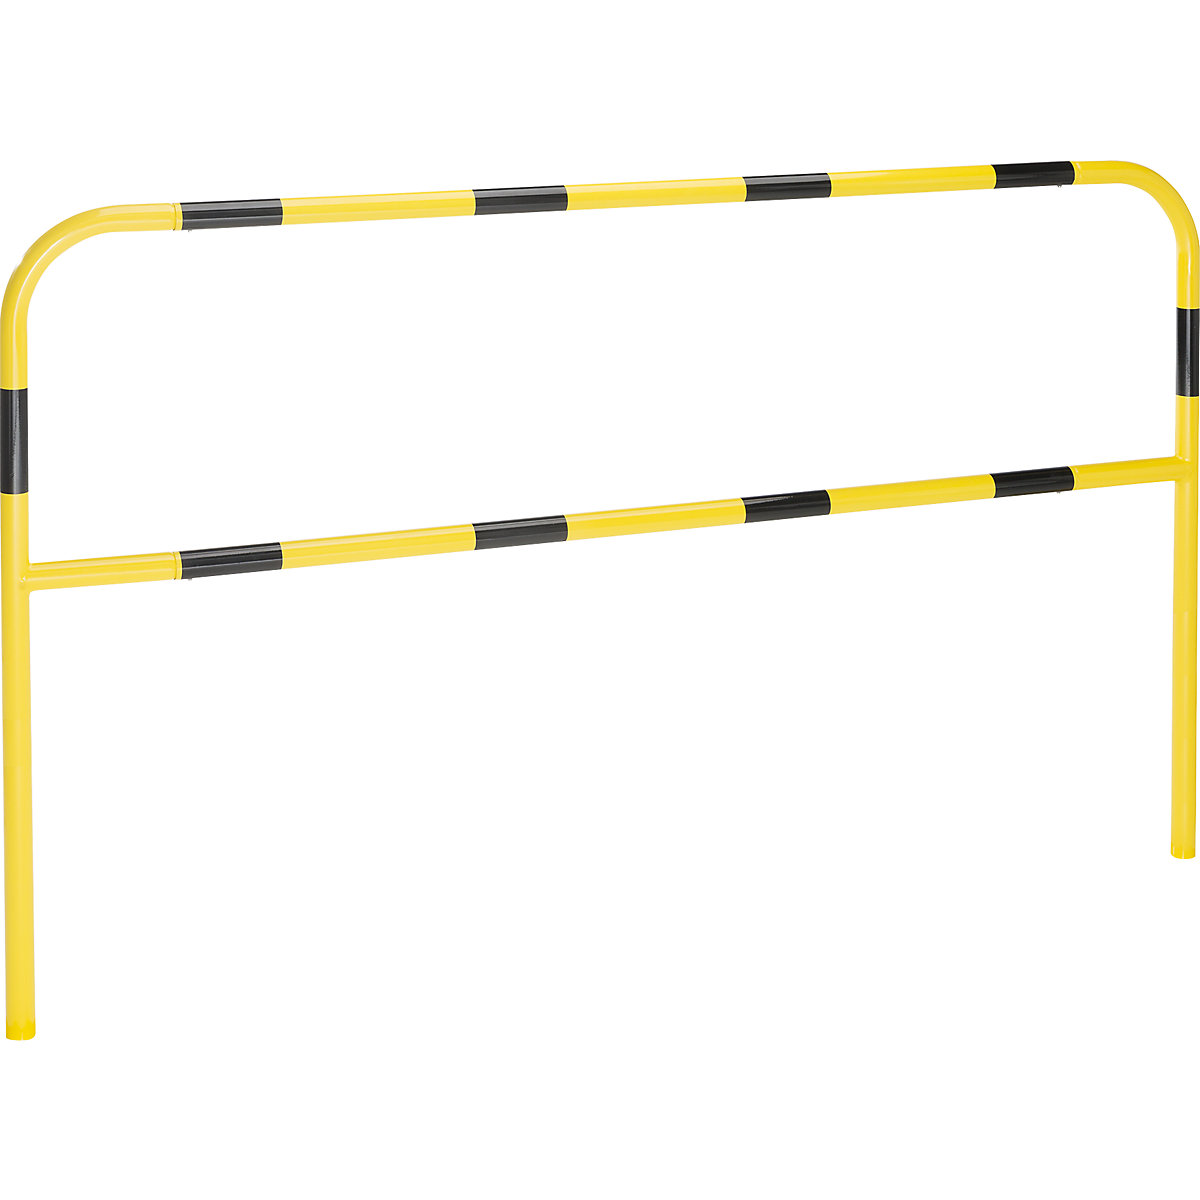 Sicherheitsbügel für Gefahrenzonen, zum Einbetonieren, gelb / schwarz, Breite 2000 mm